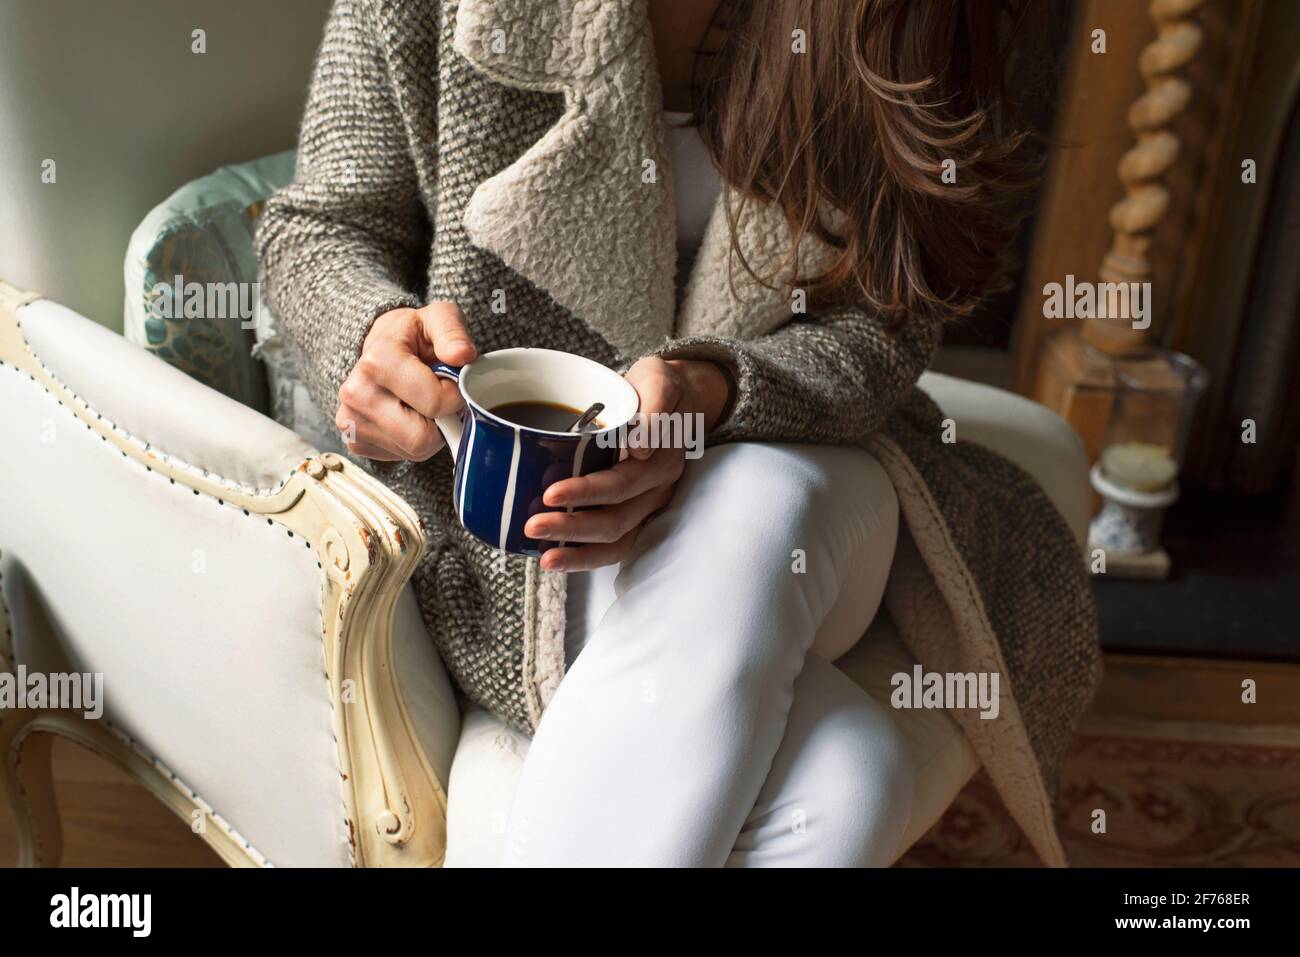 Gros plan d'une femme en tricot chaud assise sur un fauteuil en cuir avec une tasse de café. Style de loisirs intérieur de style rustique. Londres, Royaume-Uni Banque D'Images